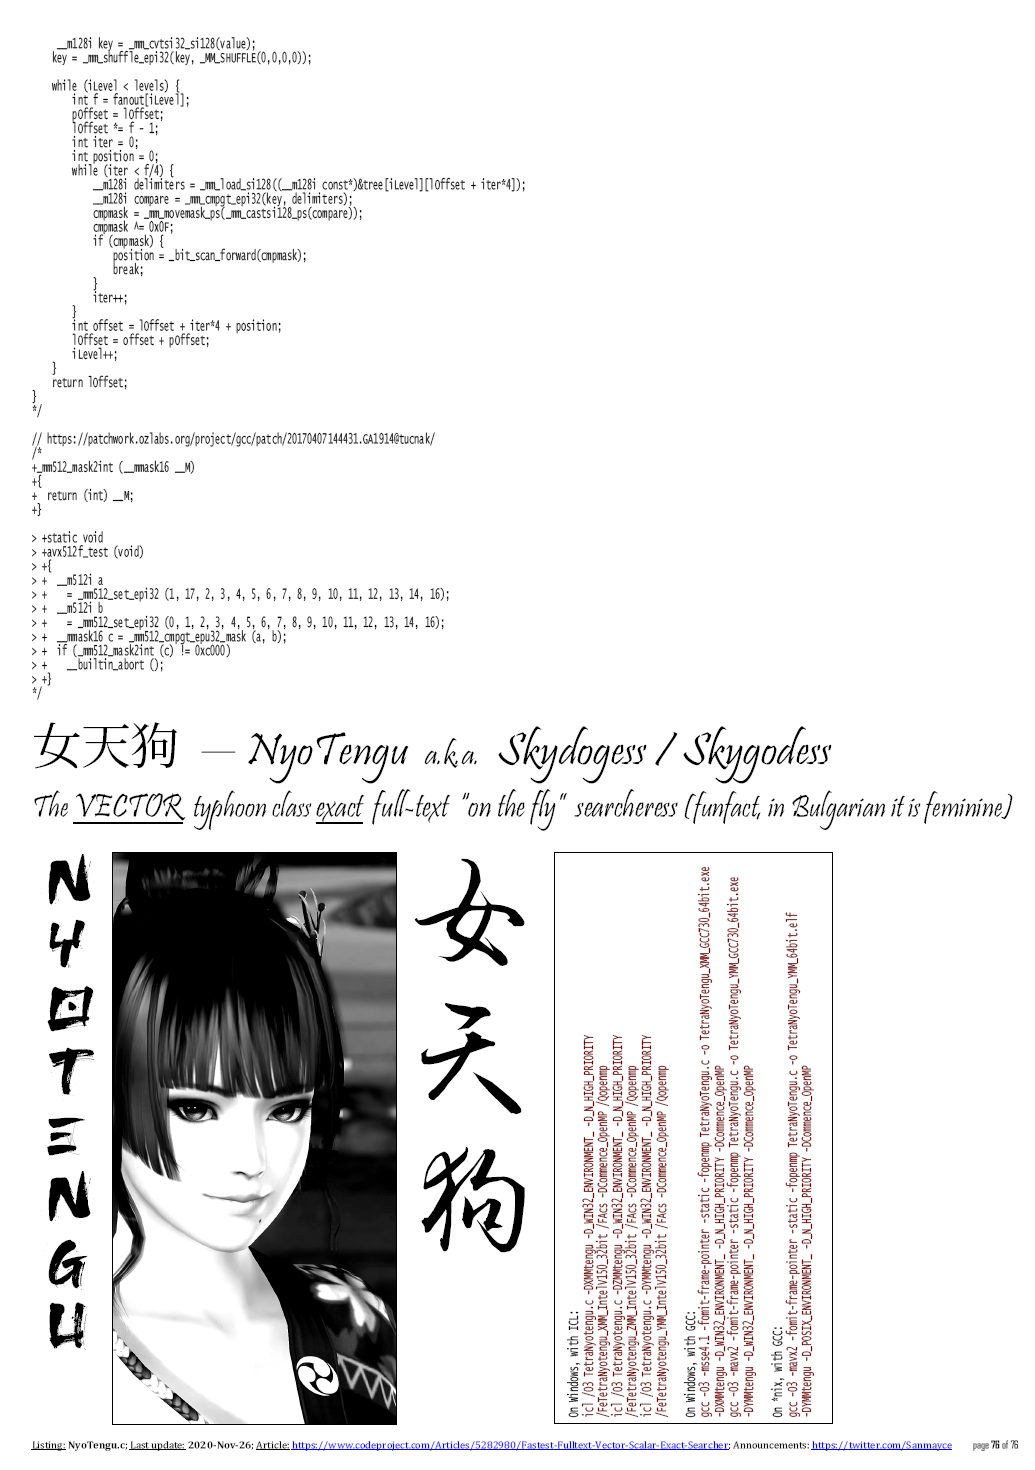 Masakari_source2.pdf.png